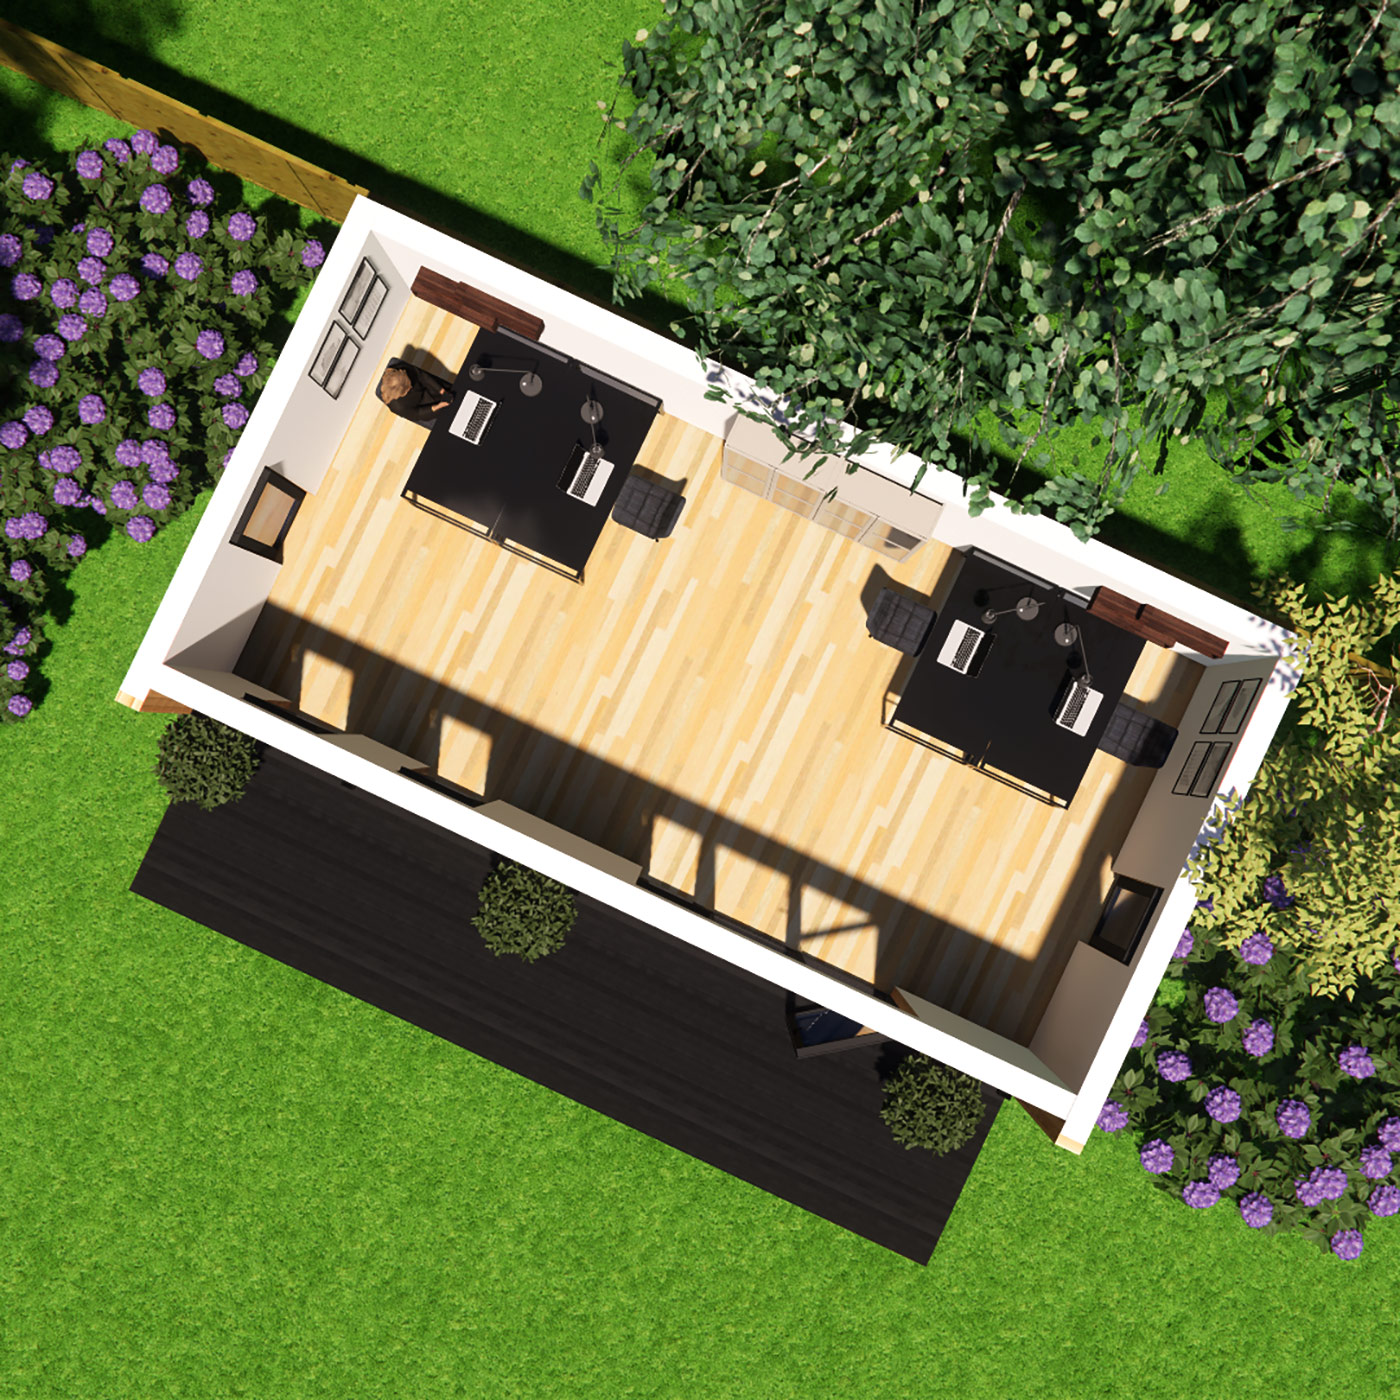 Floorplan visualisation of 3.9m by 7.4m garden office